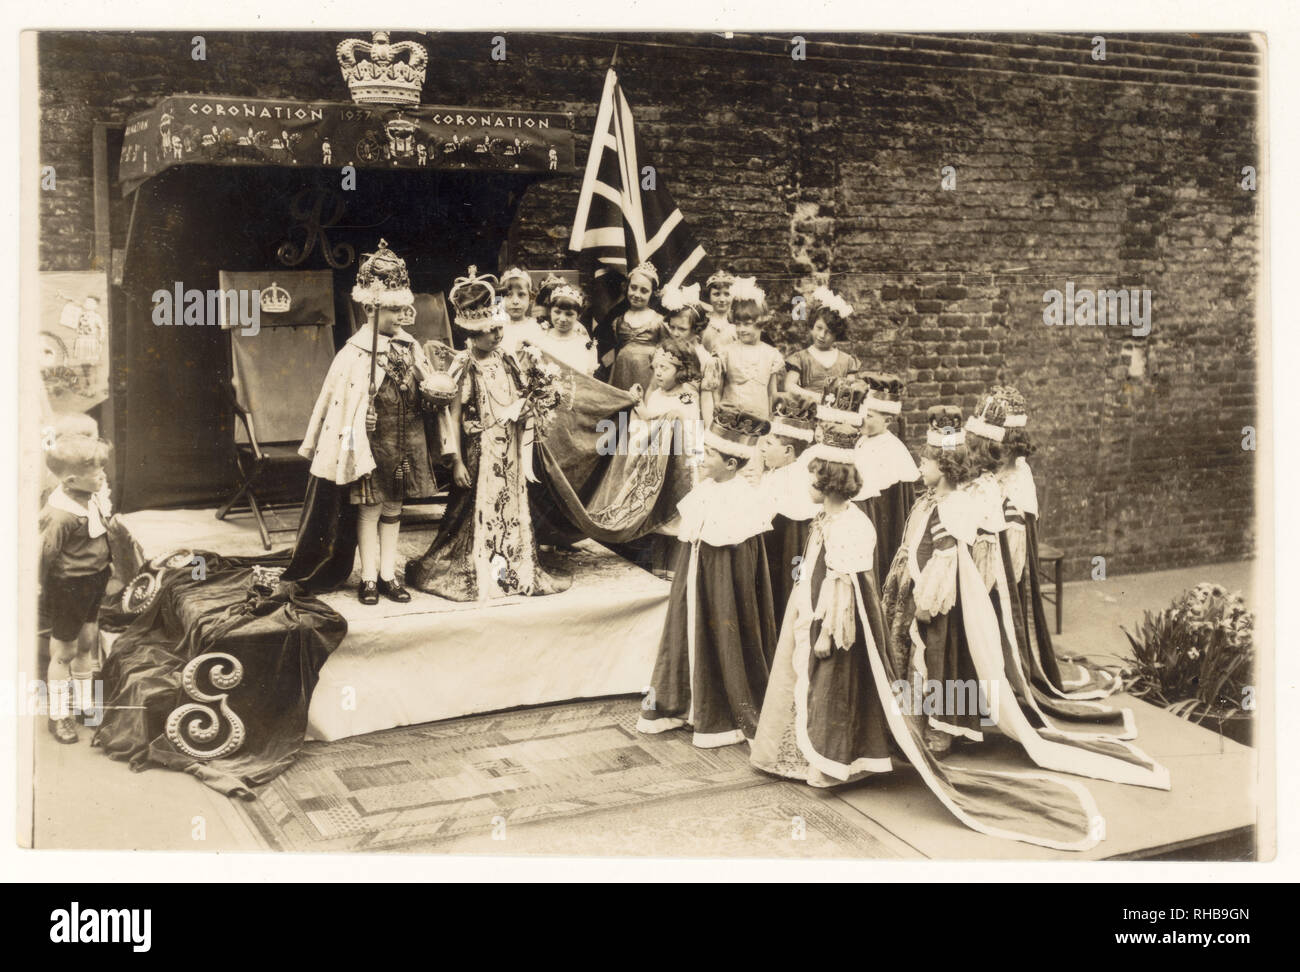 Cartolina originale degli anni '1930 dell'incoronazione di re Giorgio vi e della regina Elisabetta, i bambini delle scuole che si ripresentano indossando costume, data del 1937 sopra il palco, Regno Unito. Foto Stock